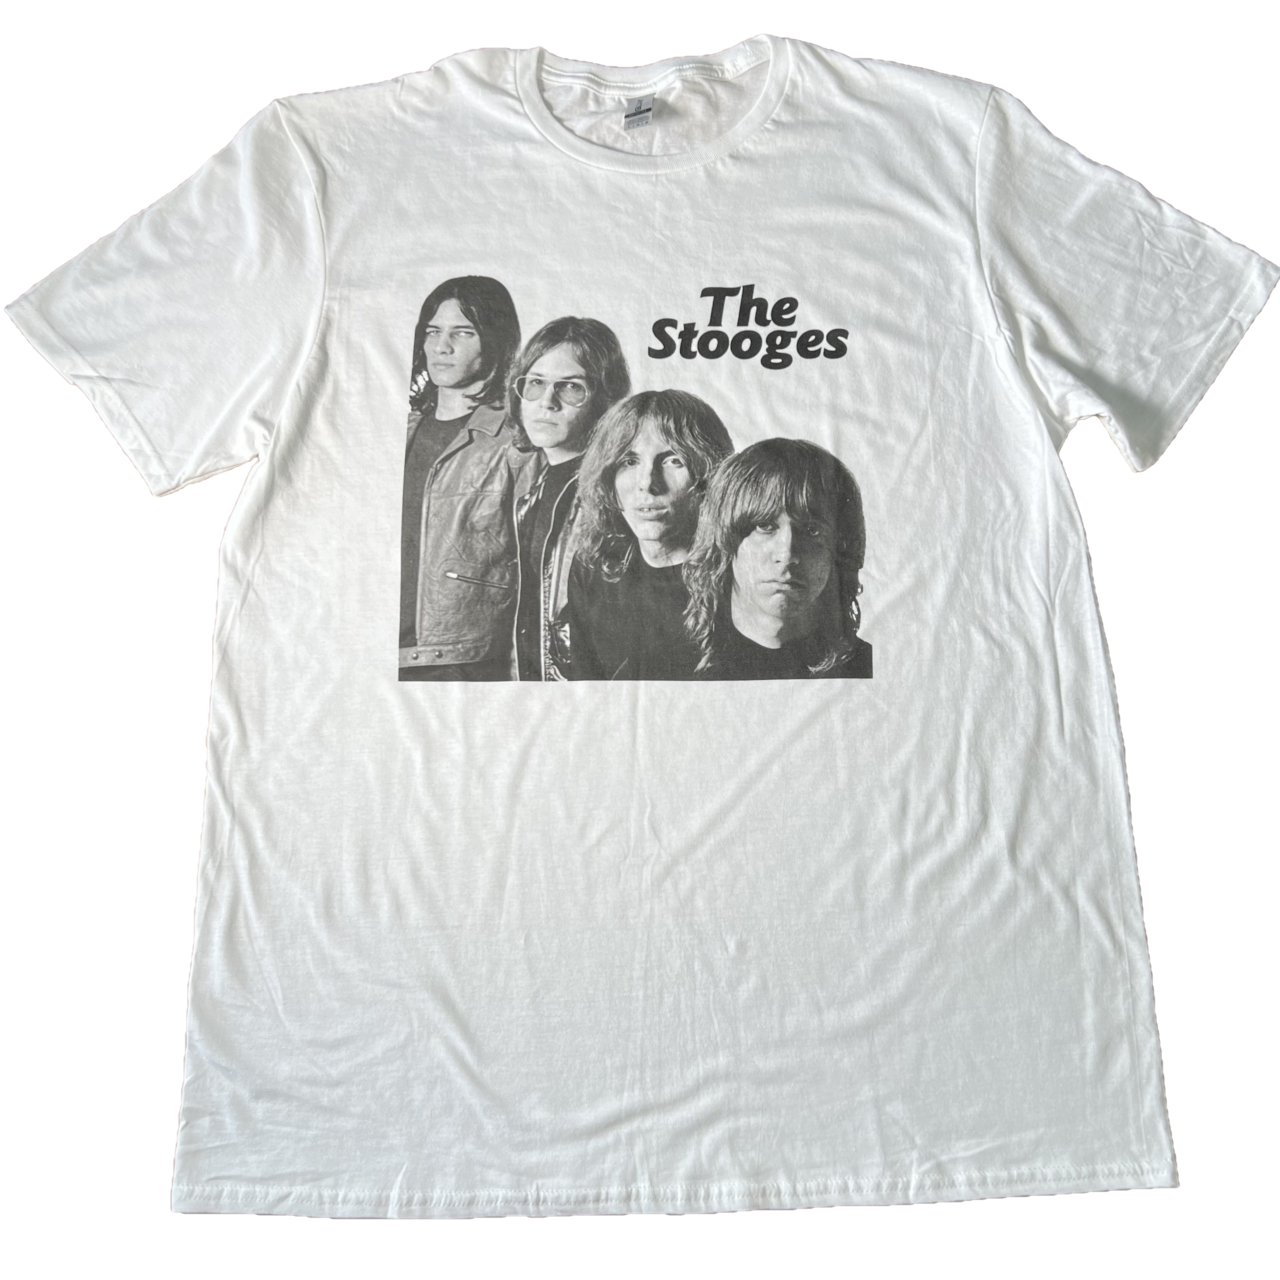 【激レア】1991 iggypop s/s band T-shirt